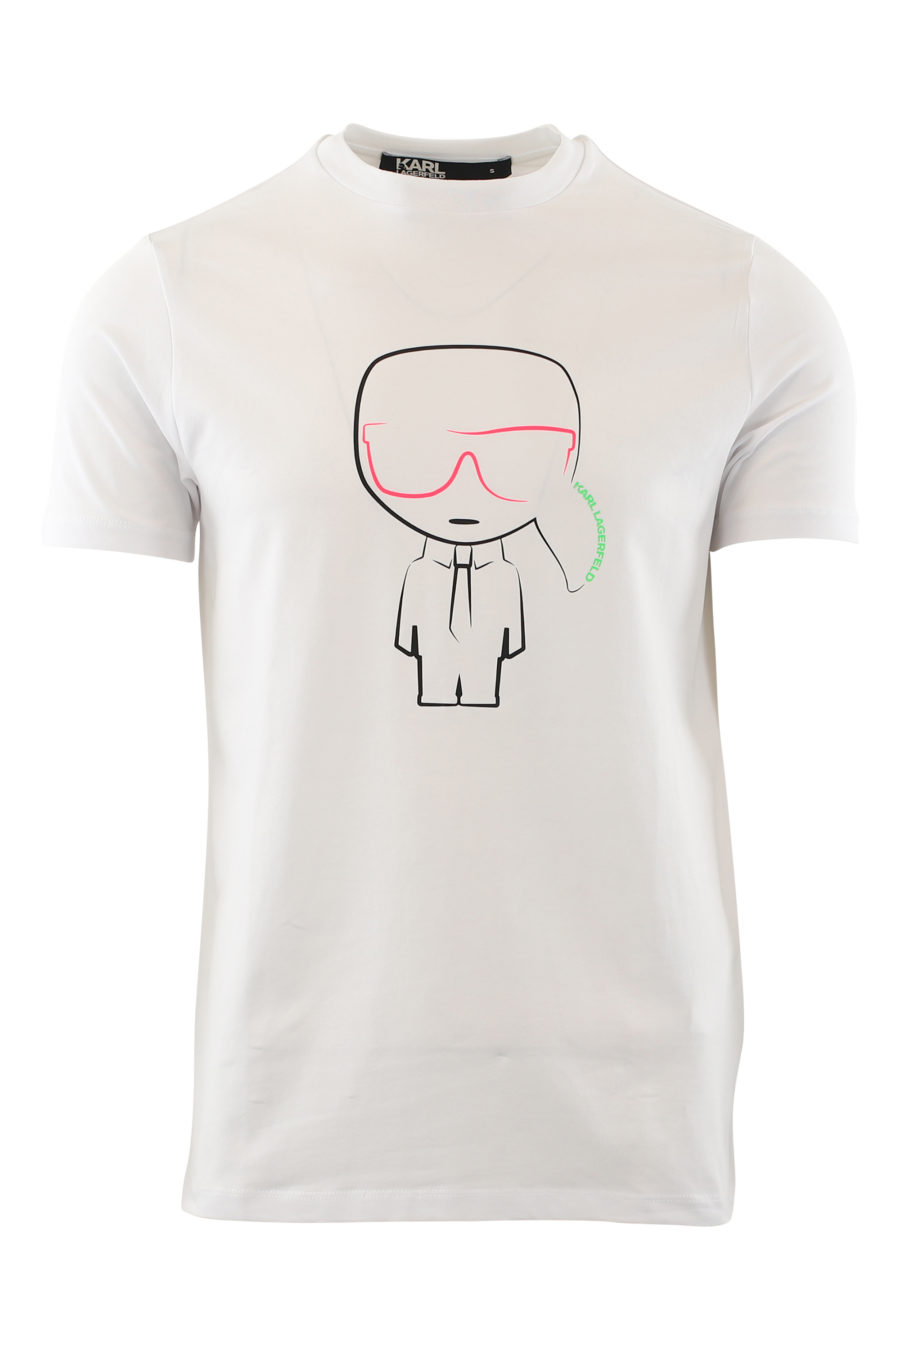 Camiseta blanca con logo en multicolores - IMG 6522